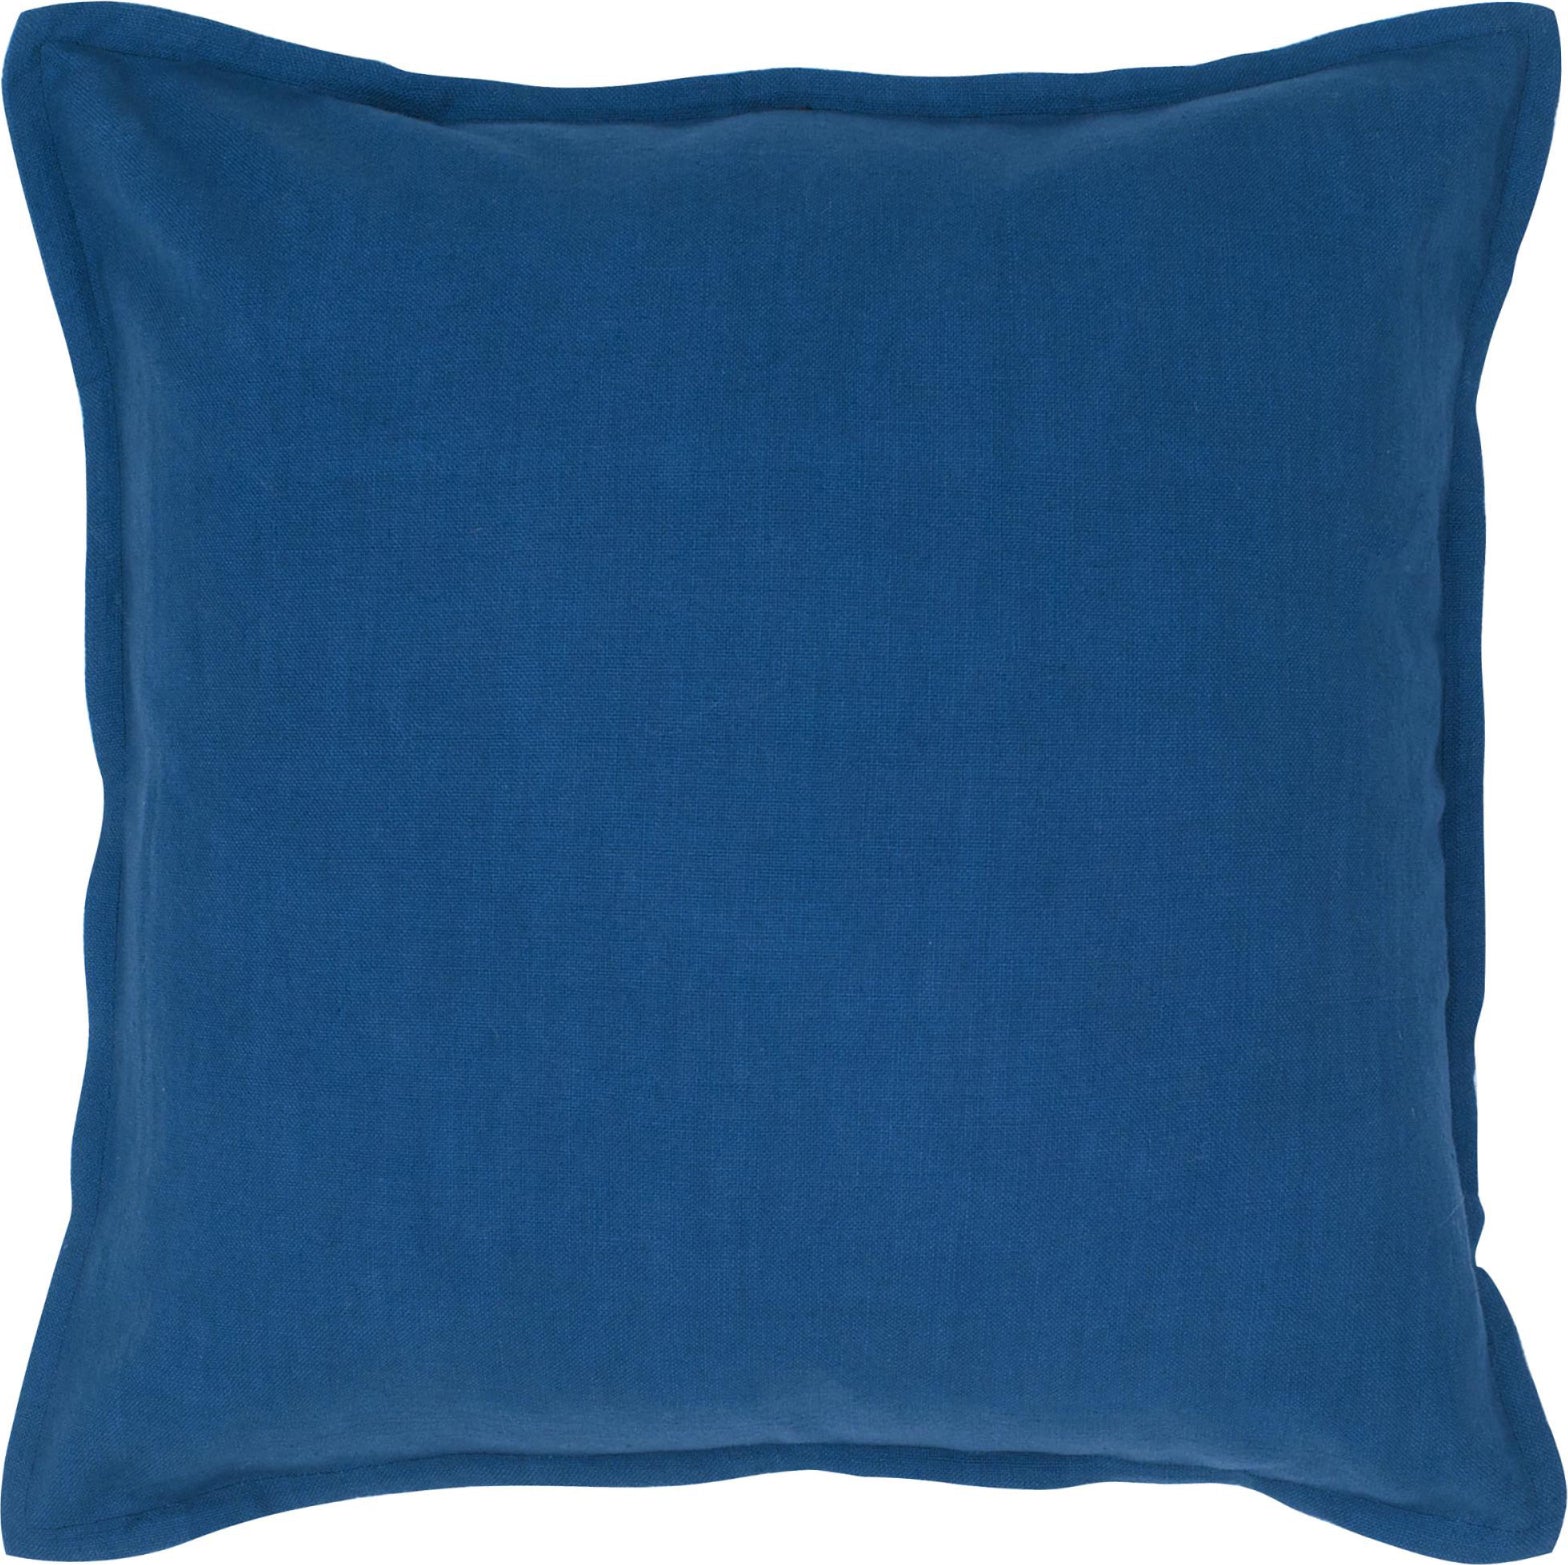 Rizzy Pillows T04401 Indigo